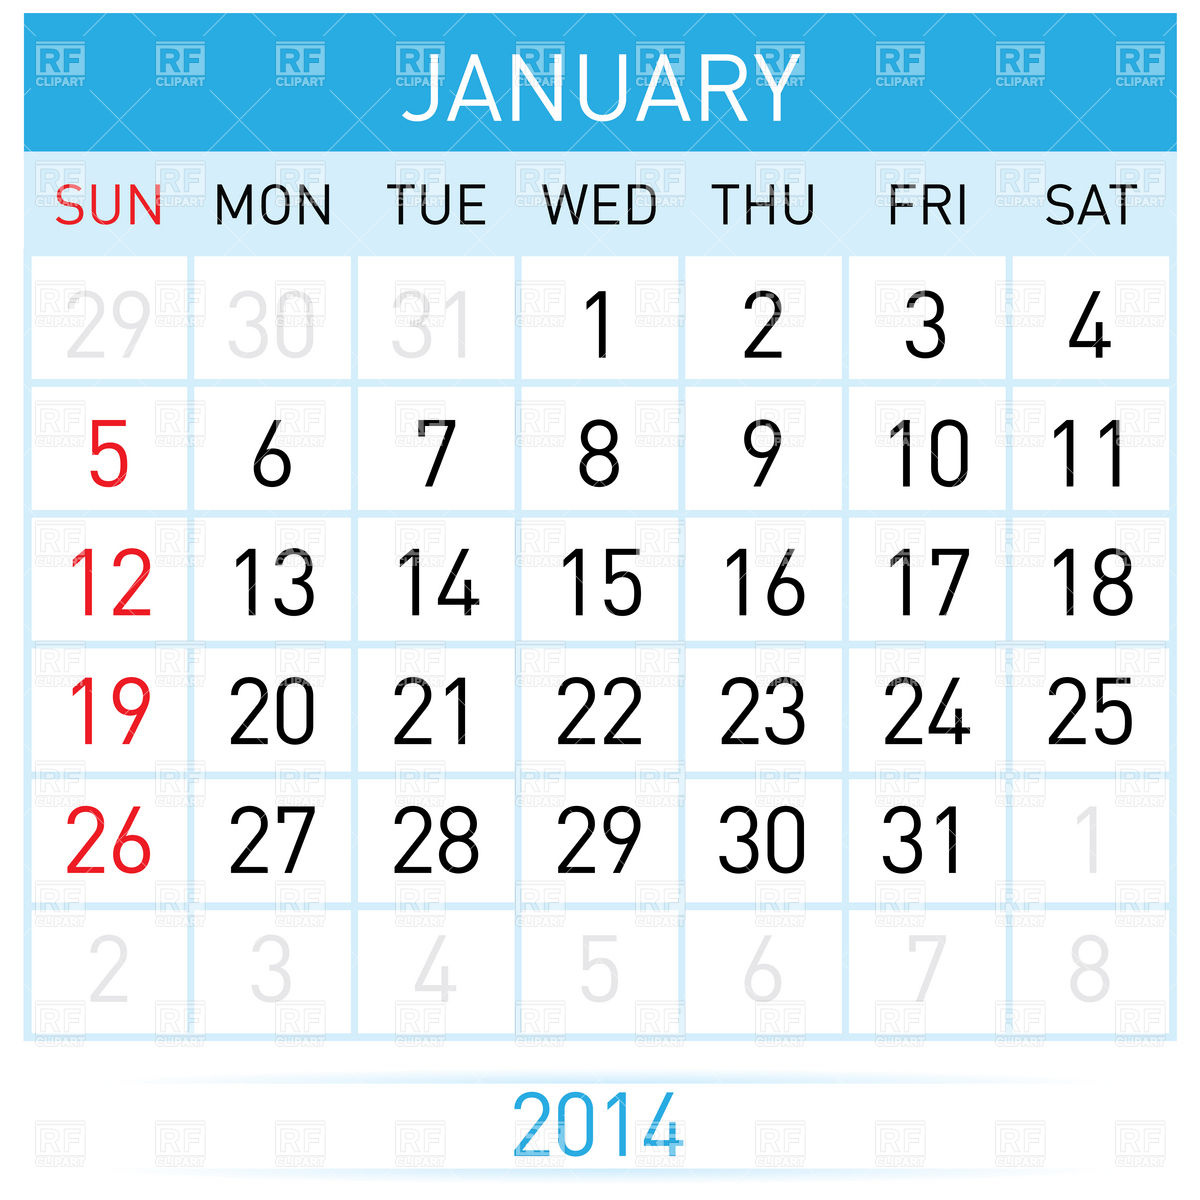 4 january calendar clipart